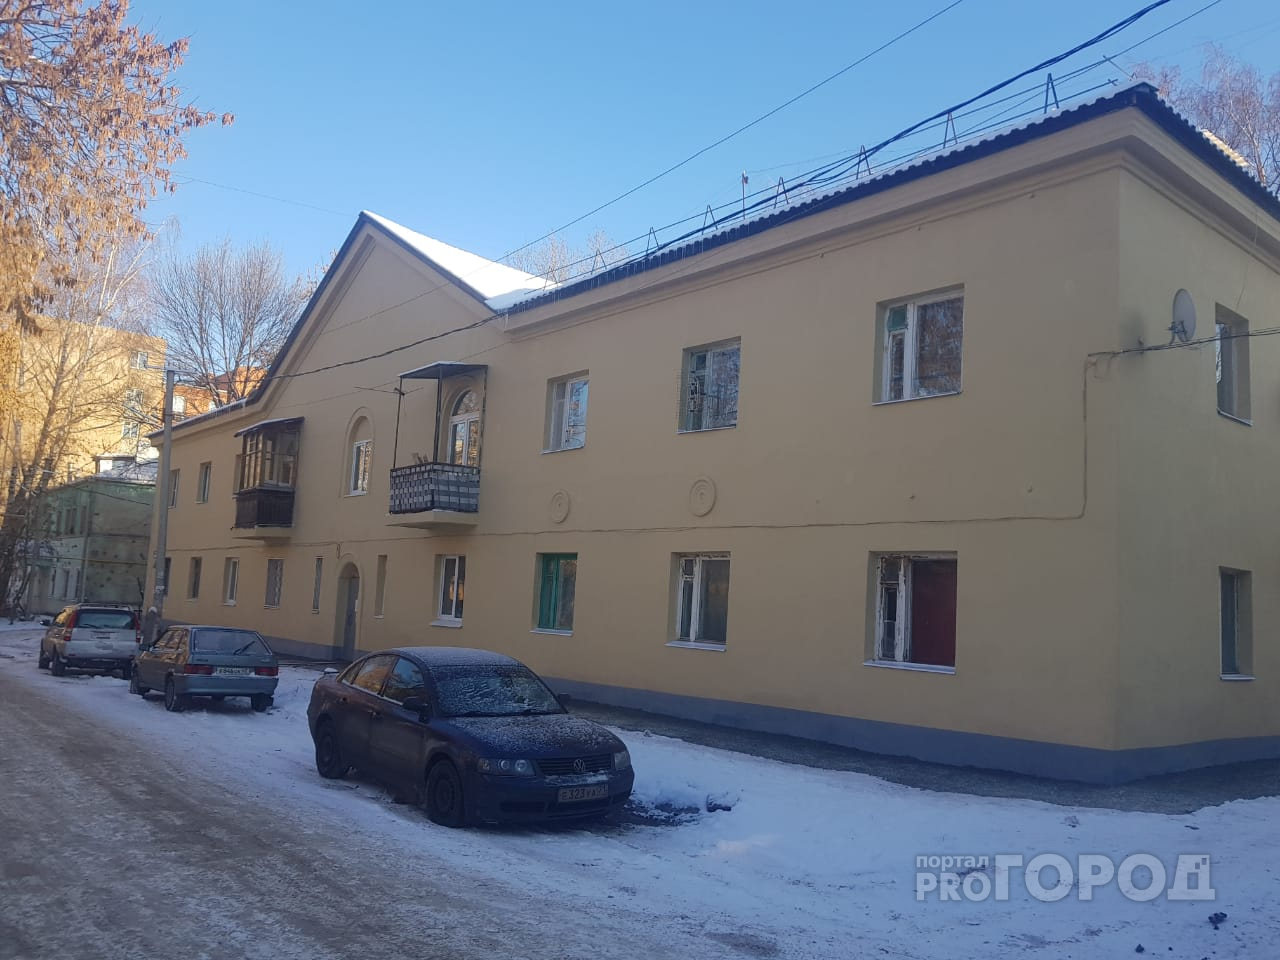 В Рязани потратили 1 643 000 рублей на ремонт дома, который снесут в ближайшие годы